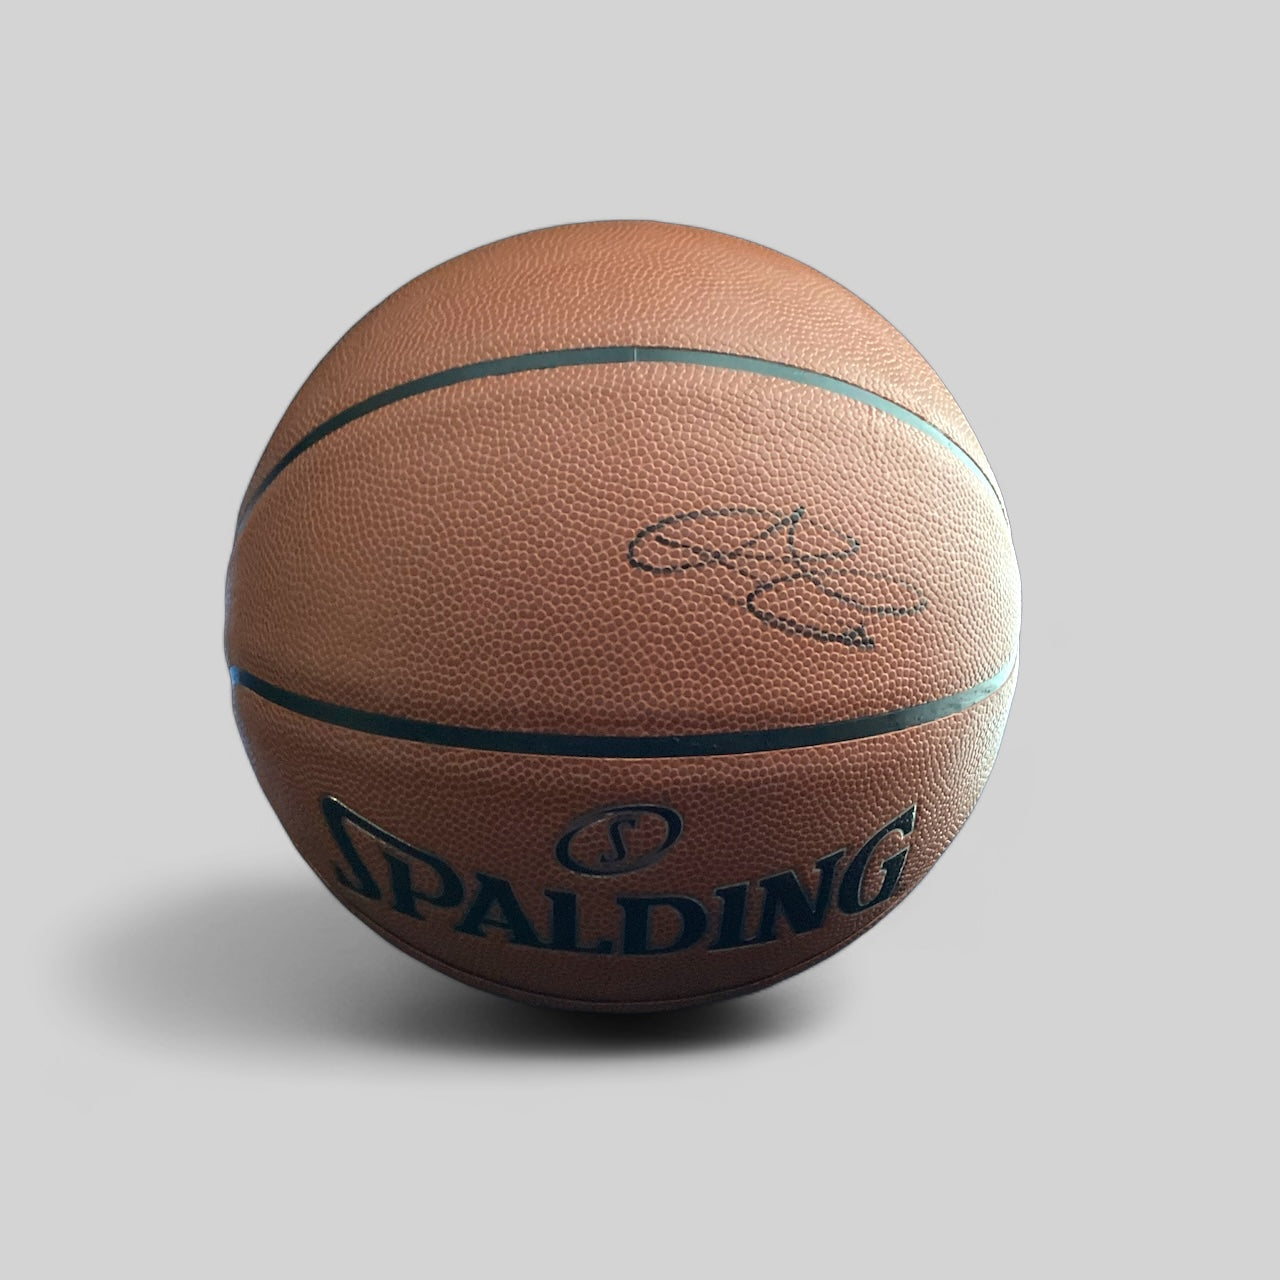 JD Davison Autographed Signed "CELTICS" basketball Elite Promotions & Graphz Authentication